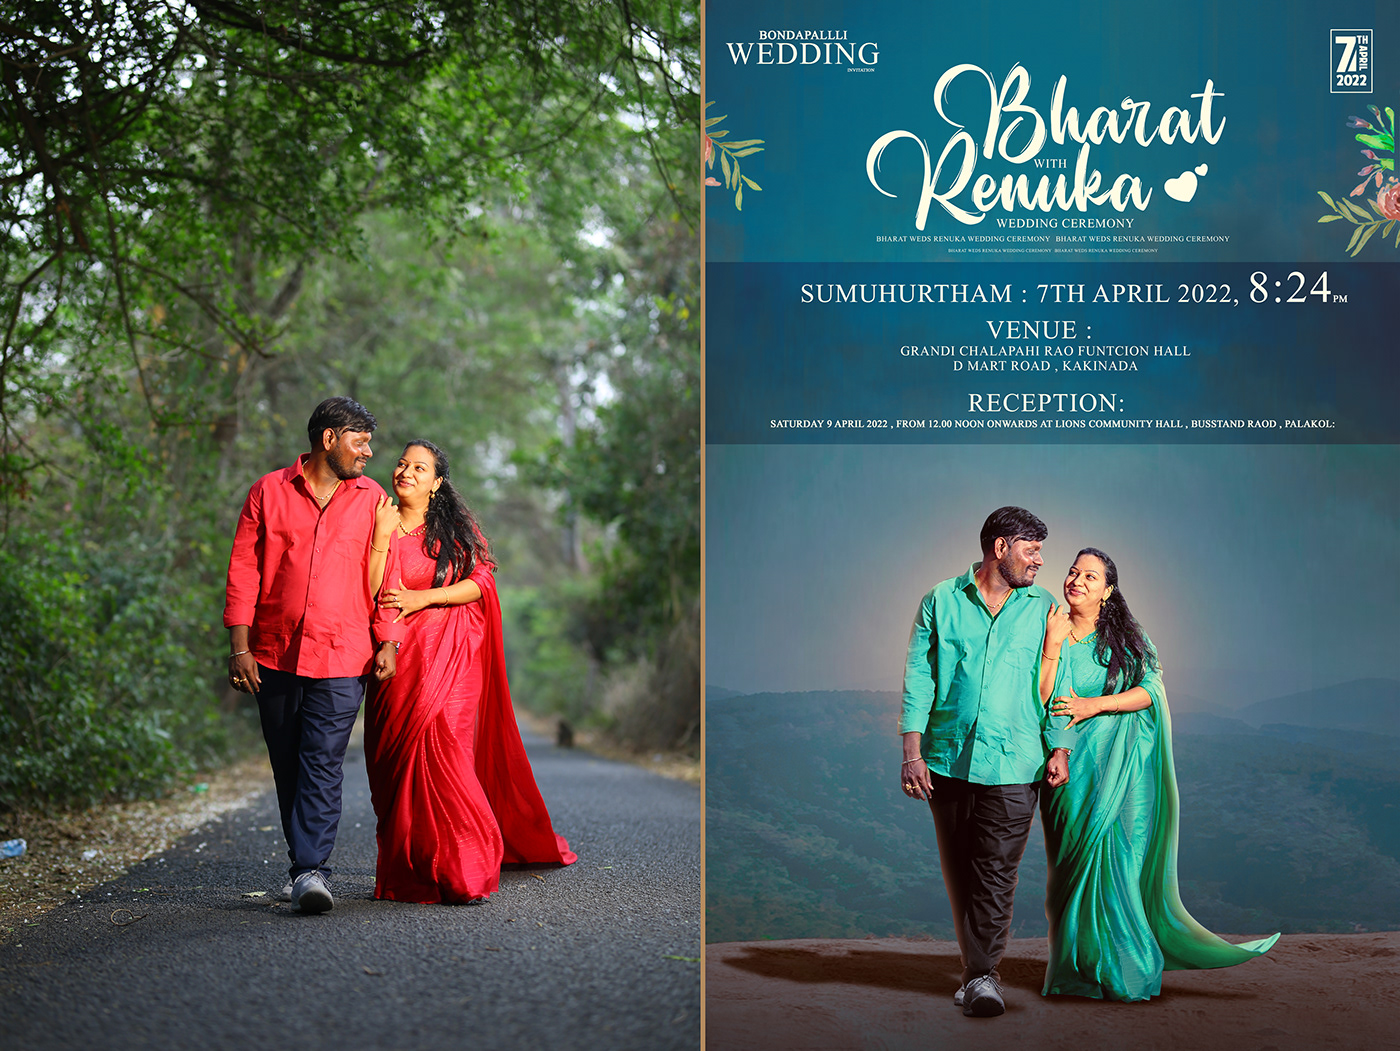 album artwork album cover save the date telugu photoshop guruji telugu wedding wedding wedding album wedding invitation